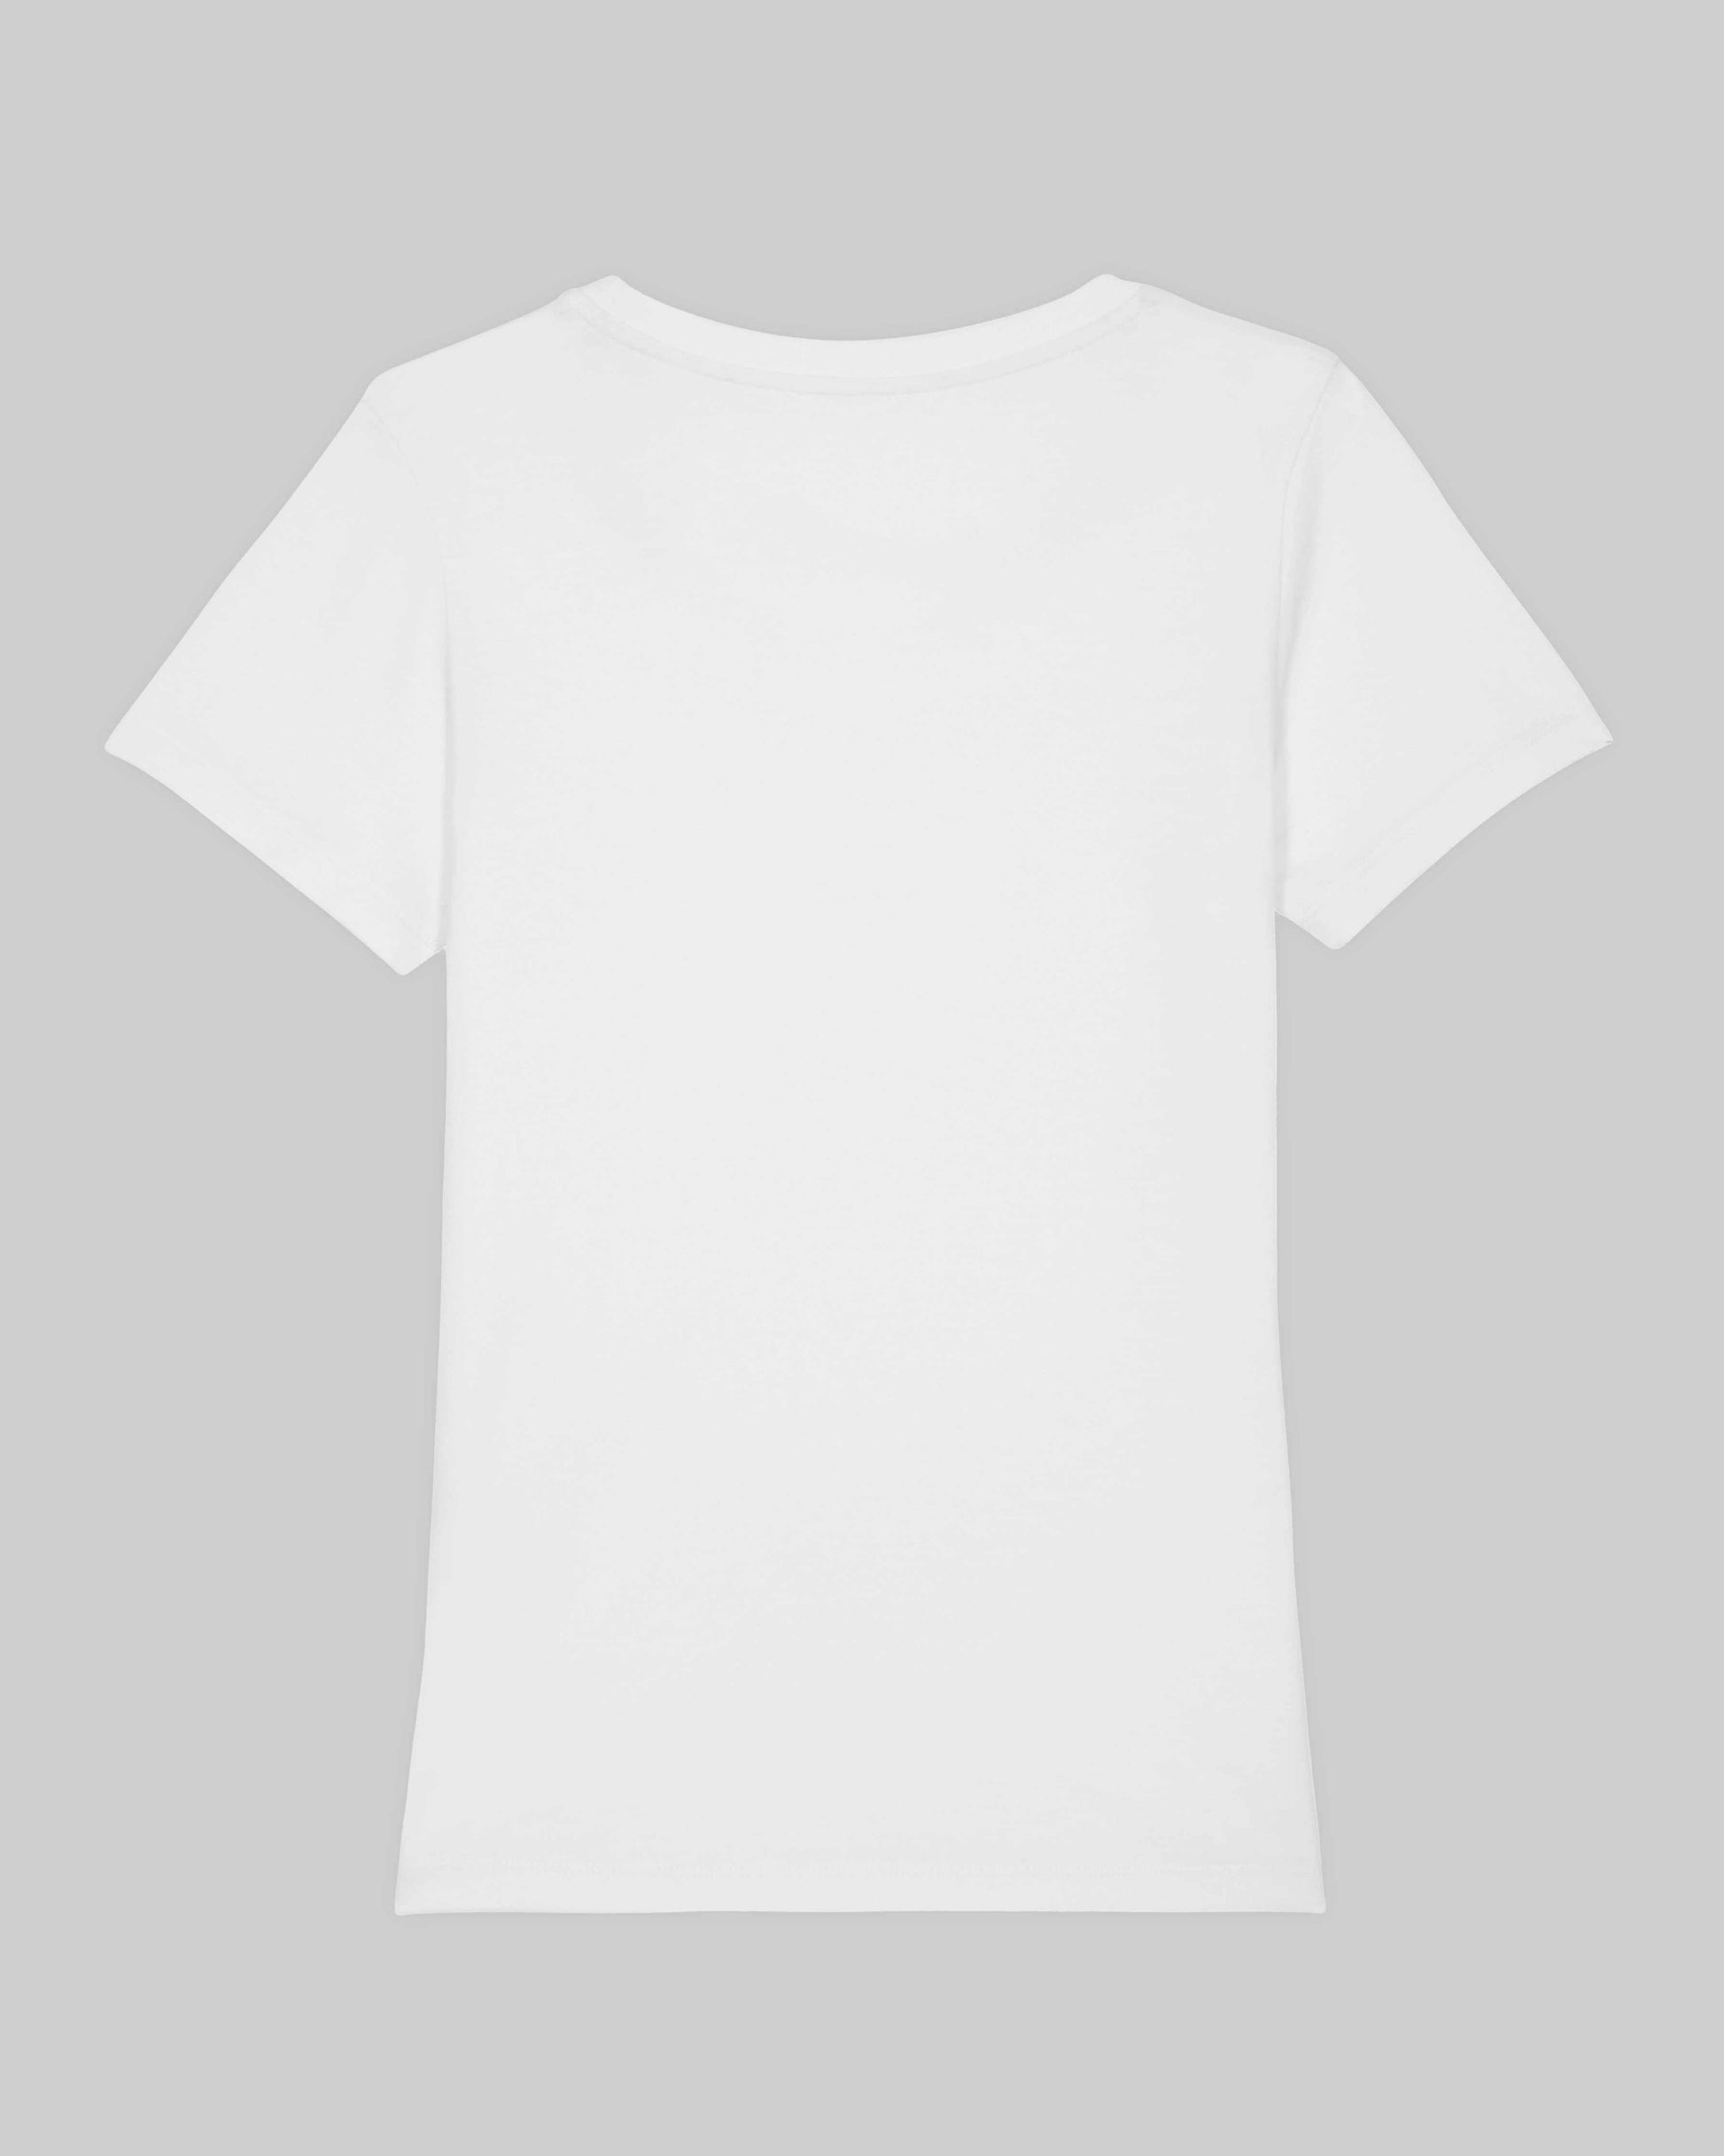 EINHORST® Organic Shirt tailliert in "Weiß" mit dem Motiv "lgbtq+ Regenbogen" in der Kombination bunter Regenbogen mit schwarzer Schrift, Bild von Shirt von hinten